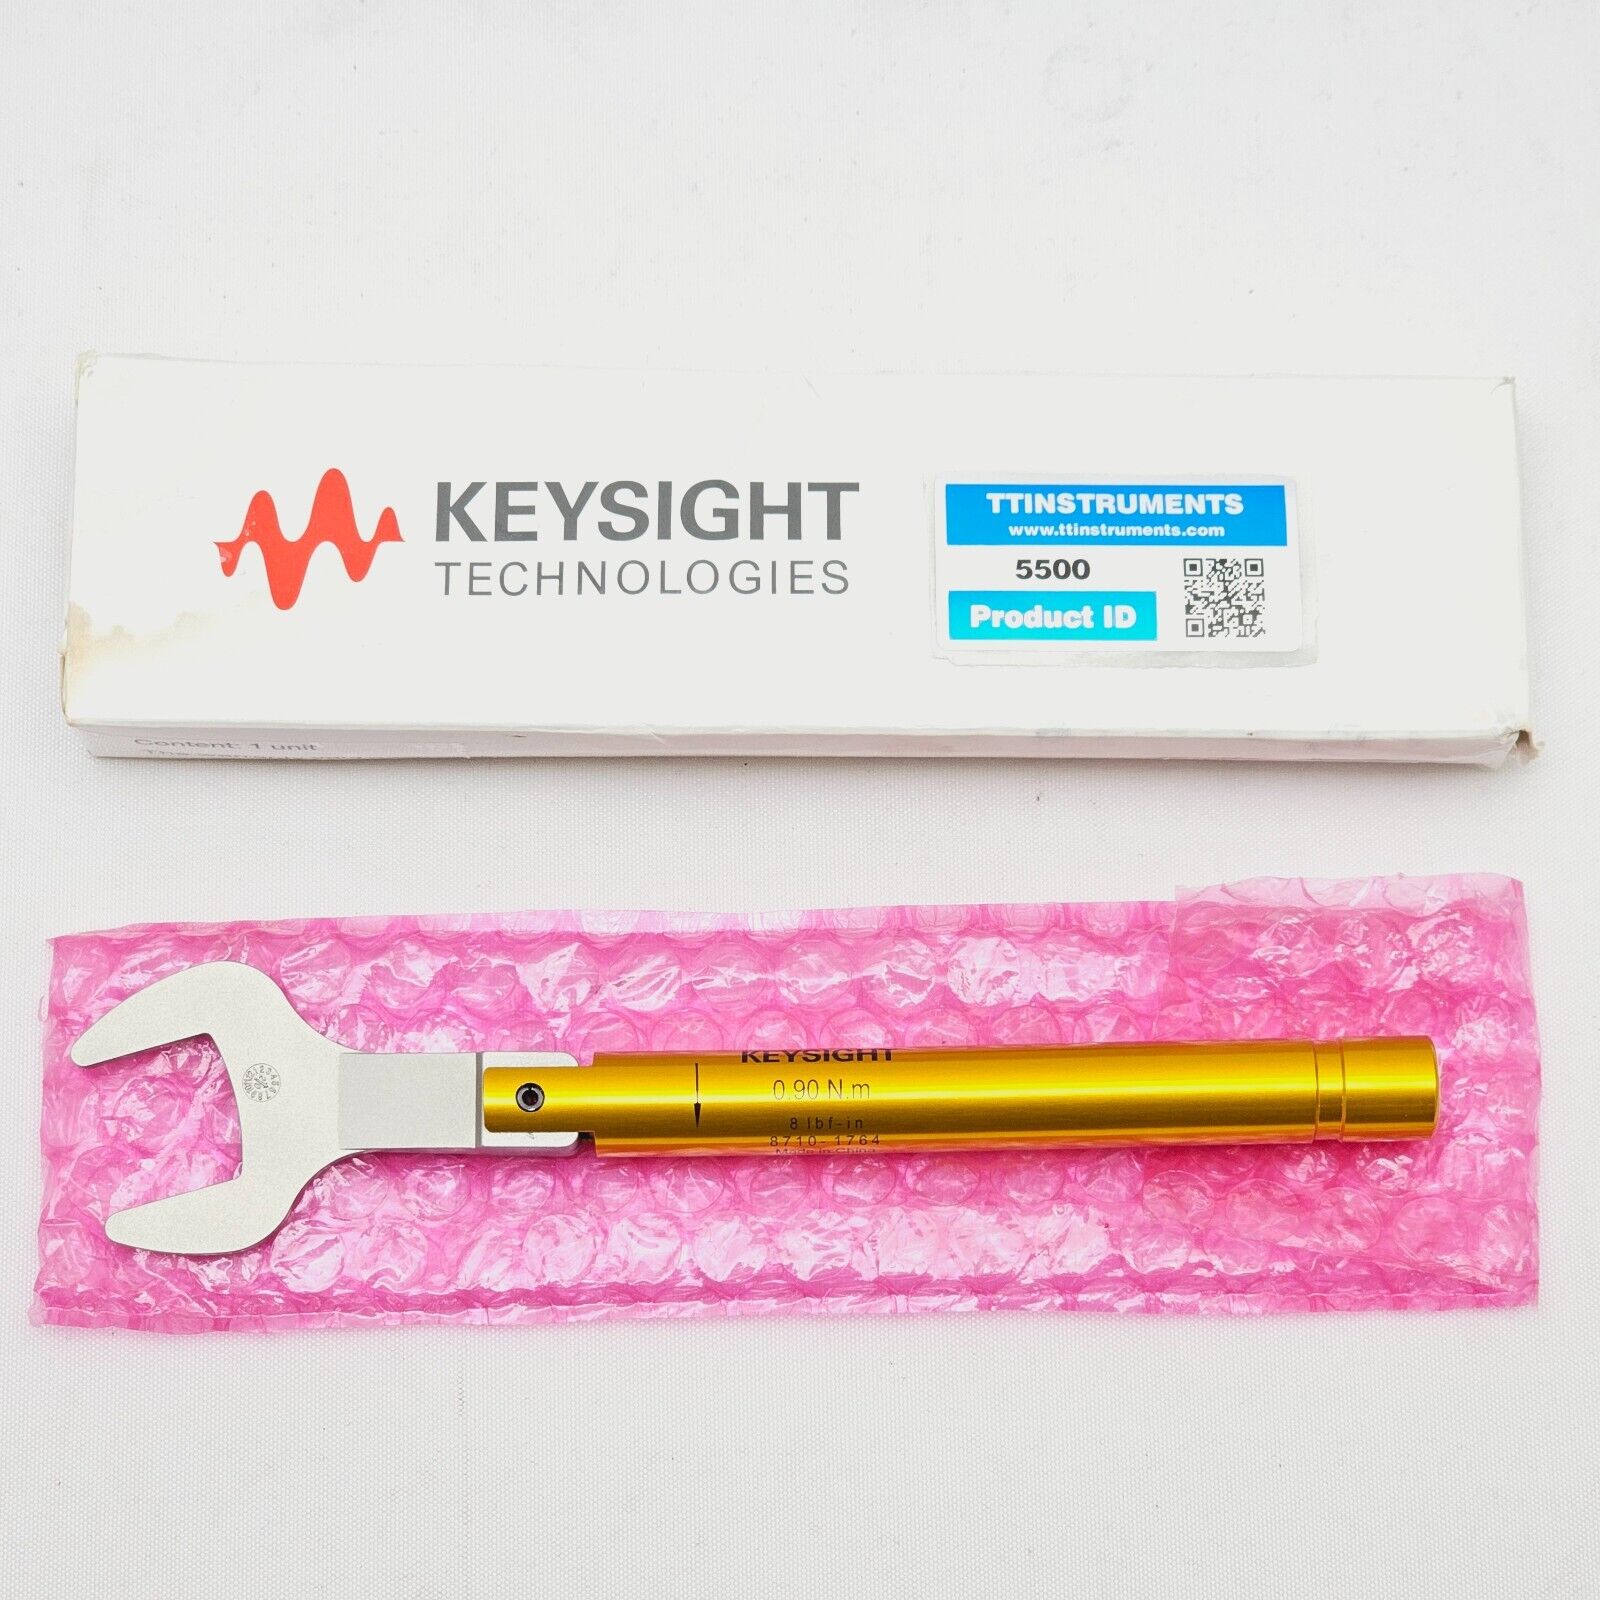 Agilent Keysight Wrench - Torque 8 lbf-in 8710-1764 0.90 N.m